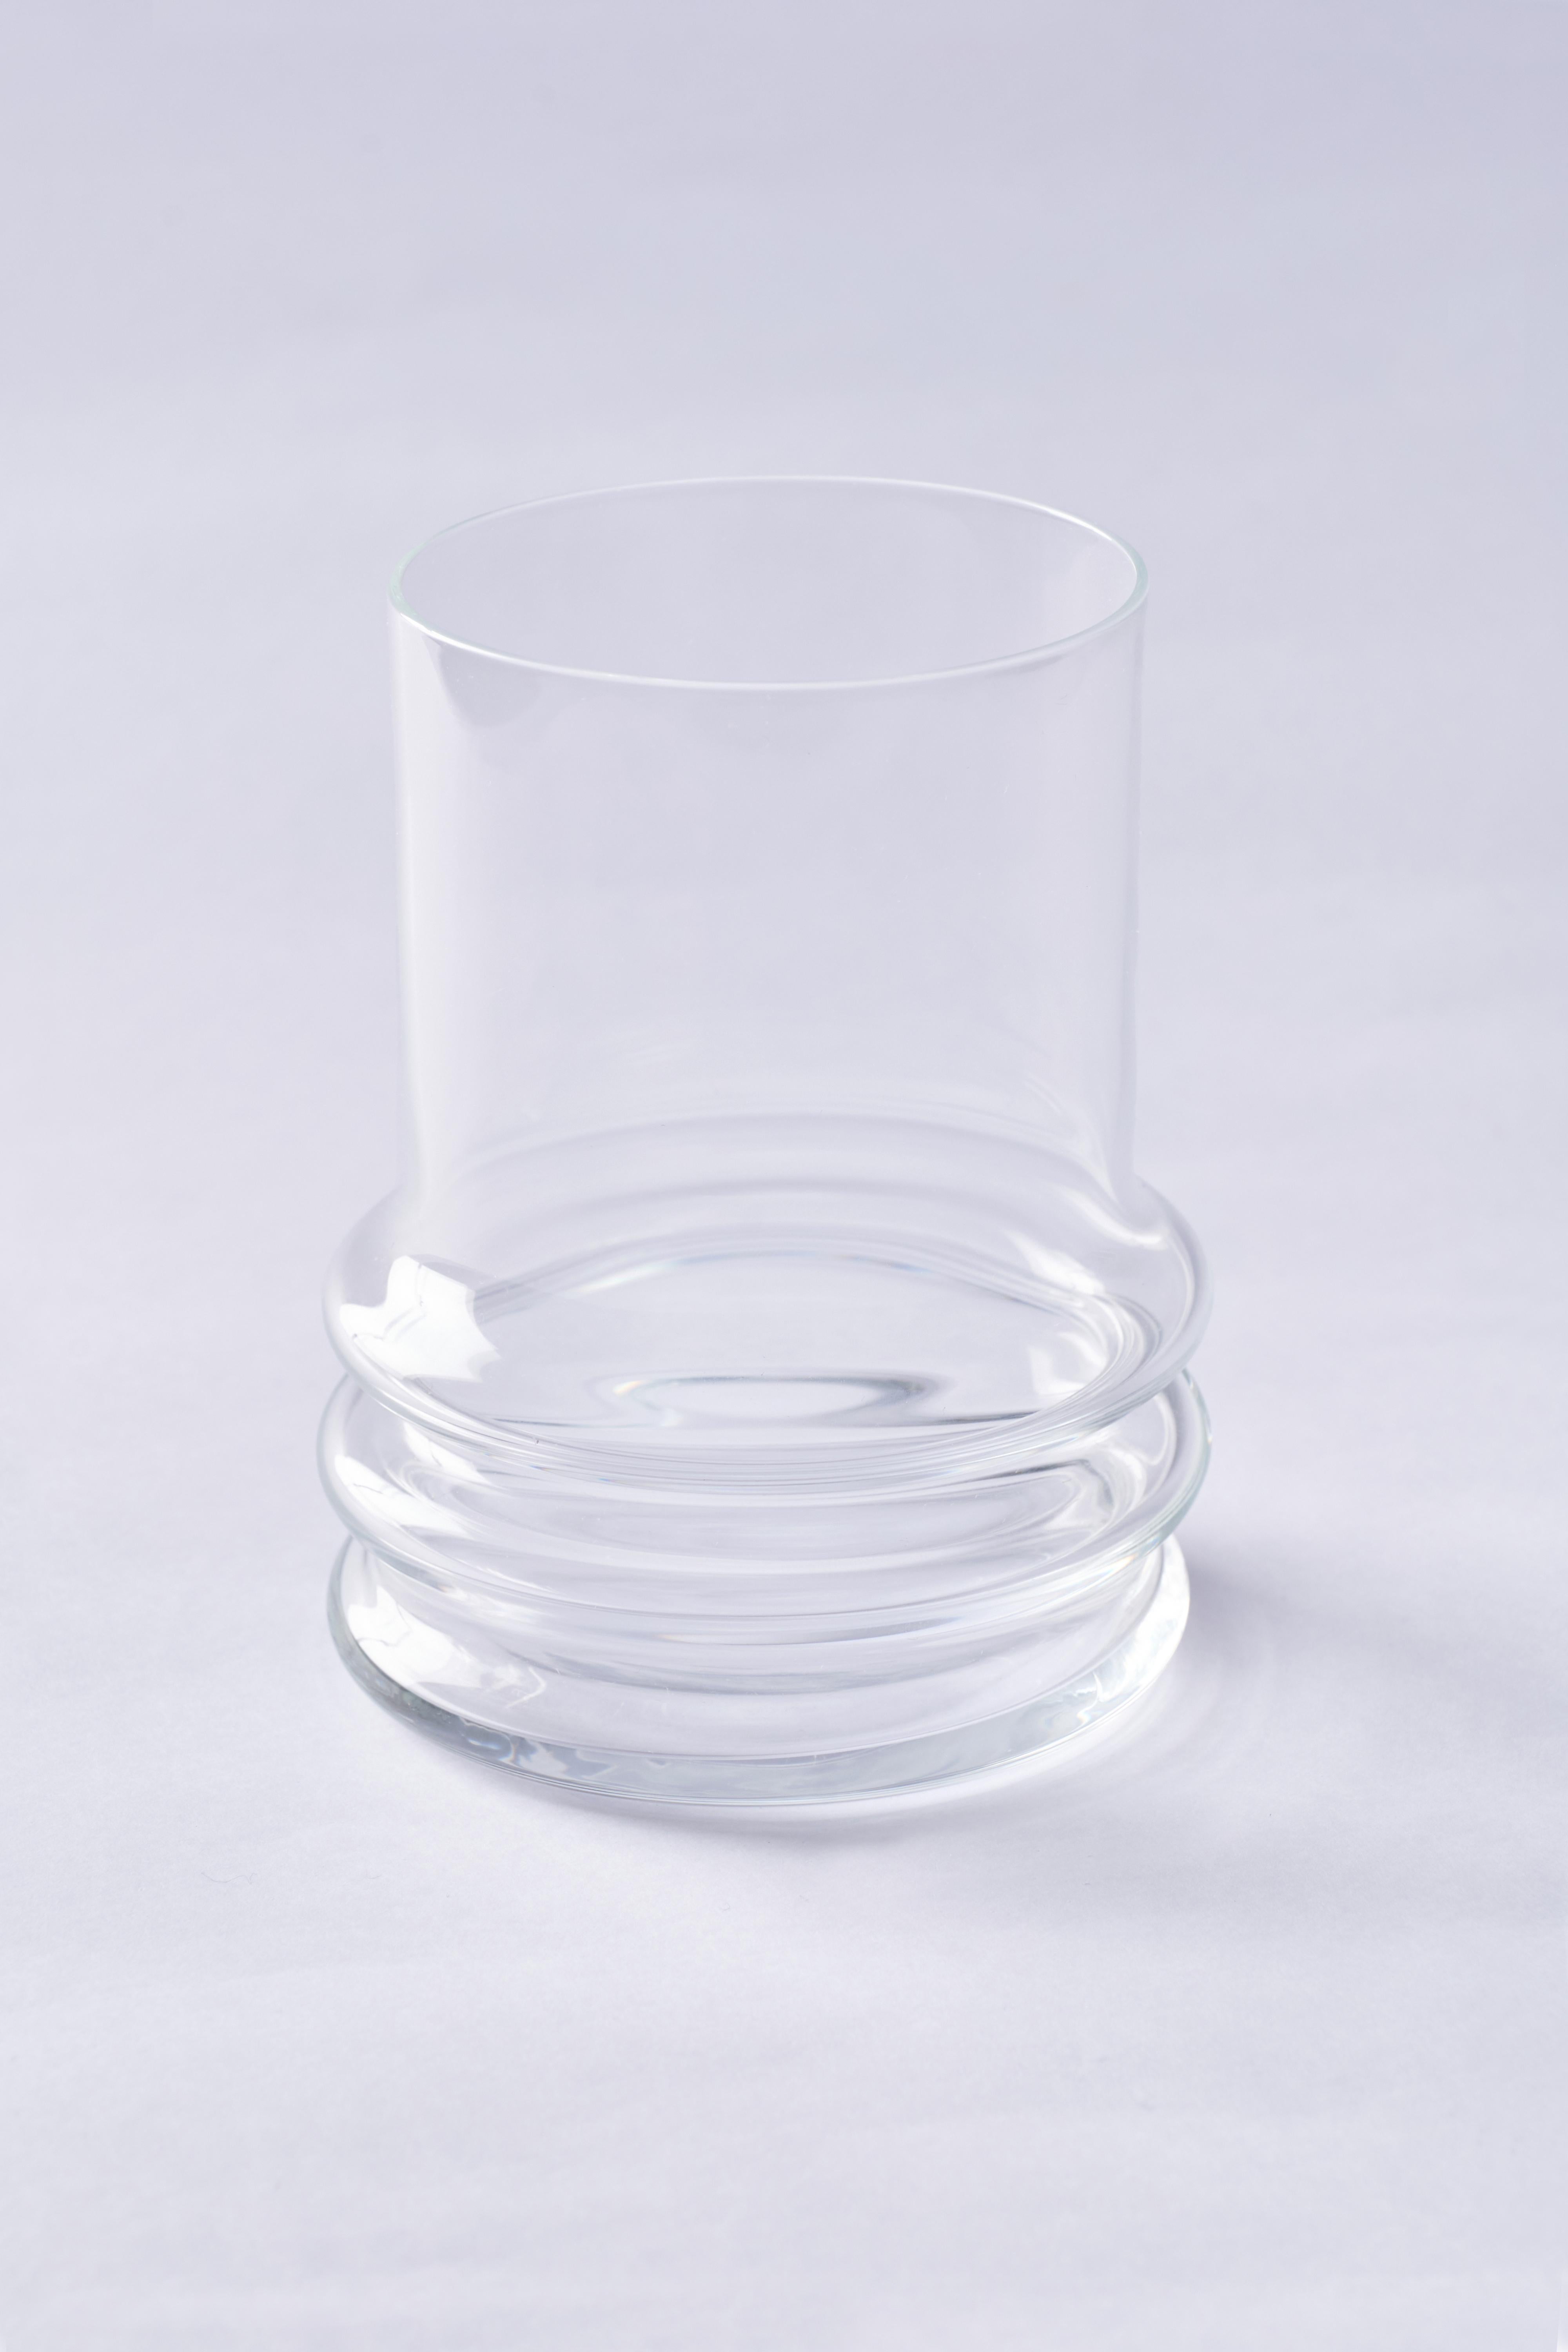 Kristall hat als Glas eine sehr interessante Eigenschaft, da seine Zusammensetzung und sein Verhalten sowohl als fest als auch als flüssig katalogisiert werden können. Er wird als 